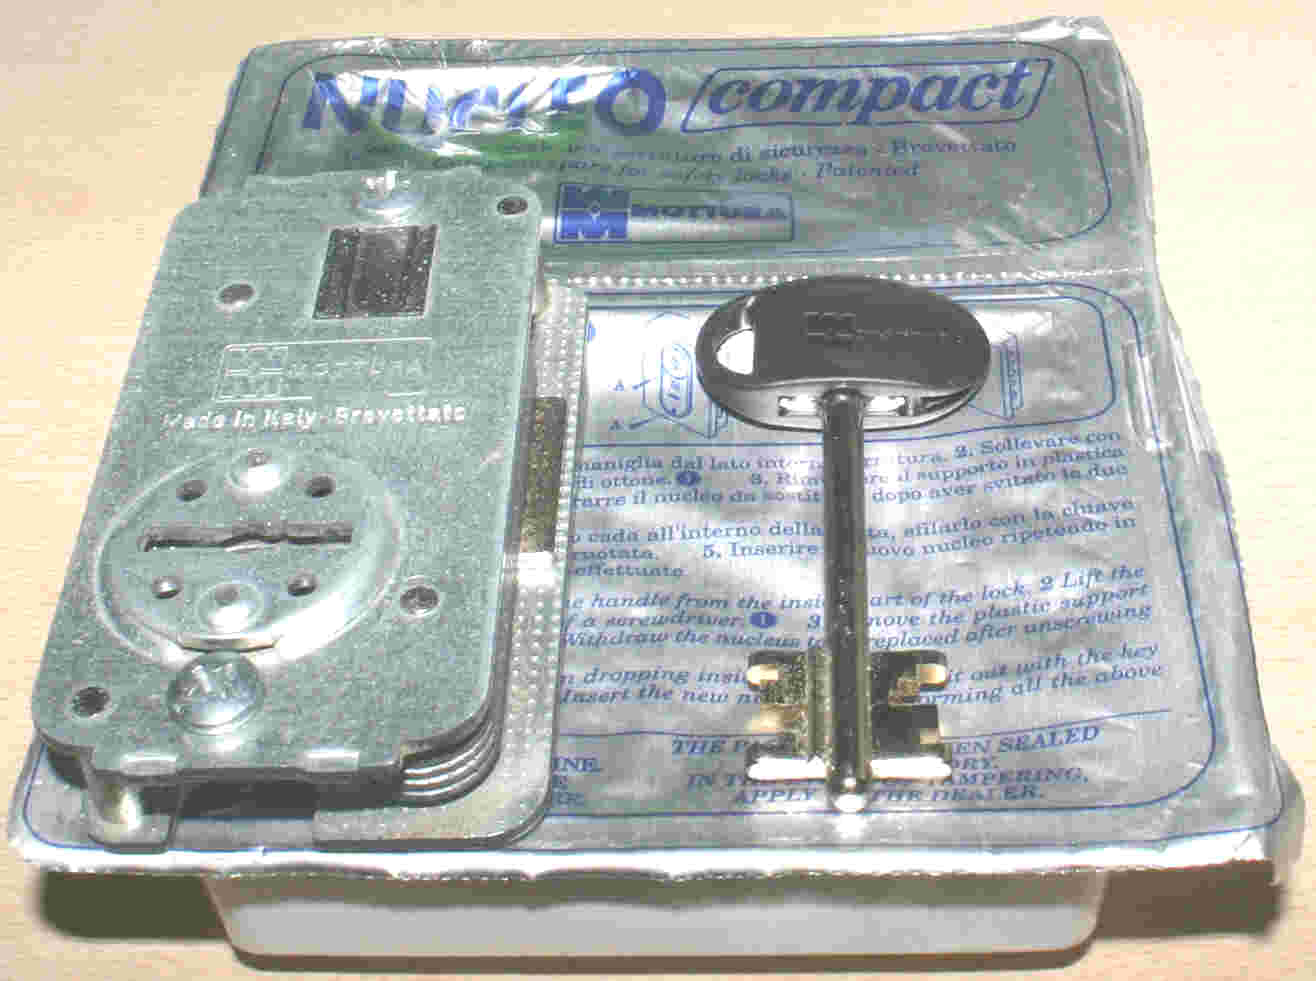 Codigo de llaves para puerta Modelo Basic1 GORJAS de 2 vueltas